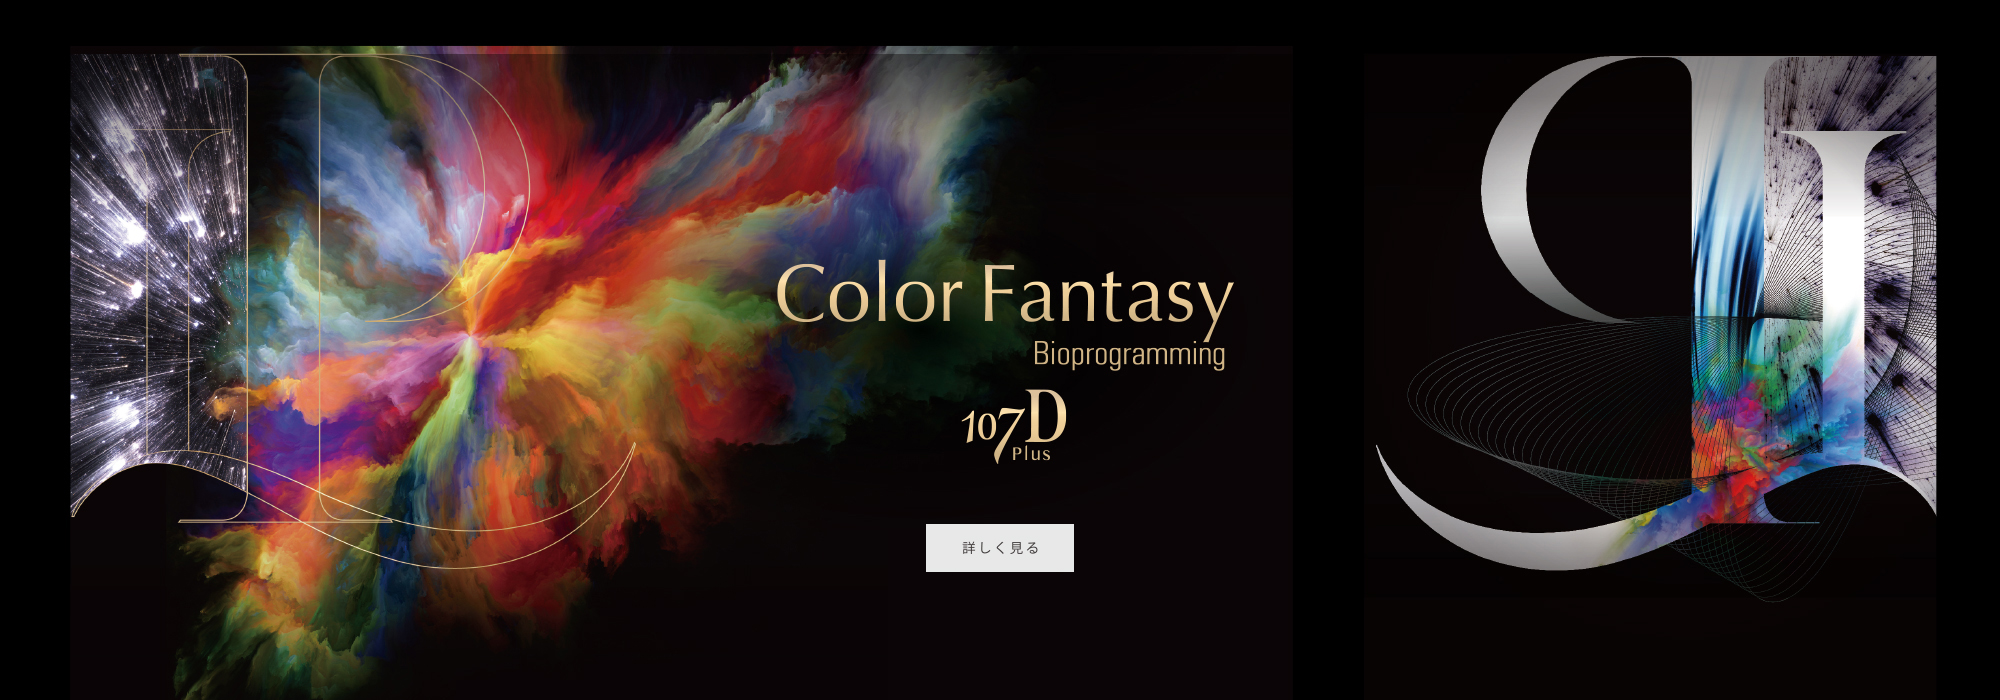 Color Fantasy 107D Plus